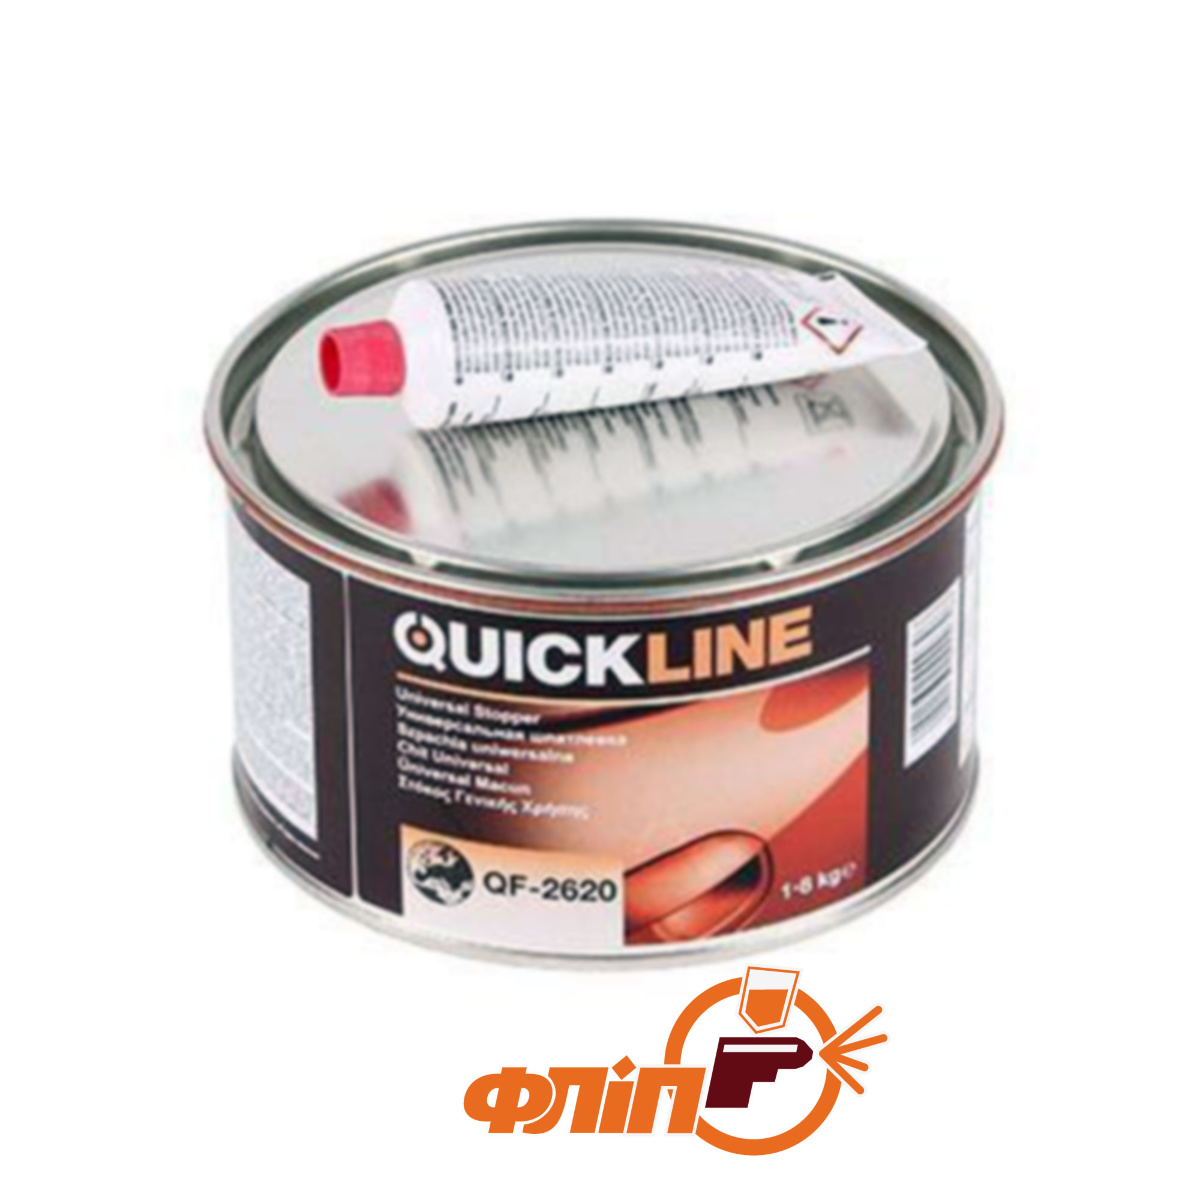  универсальная QuickLine: , цена, описание шпатлевка .